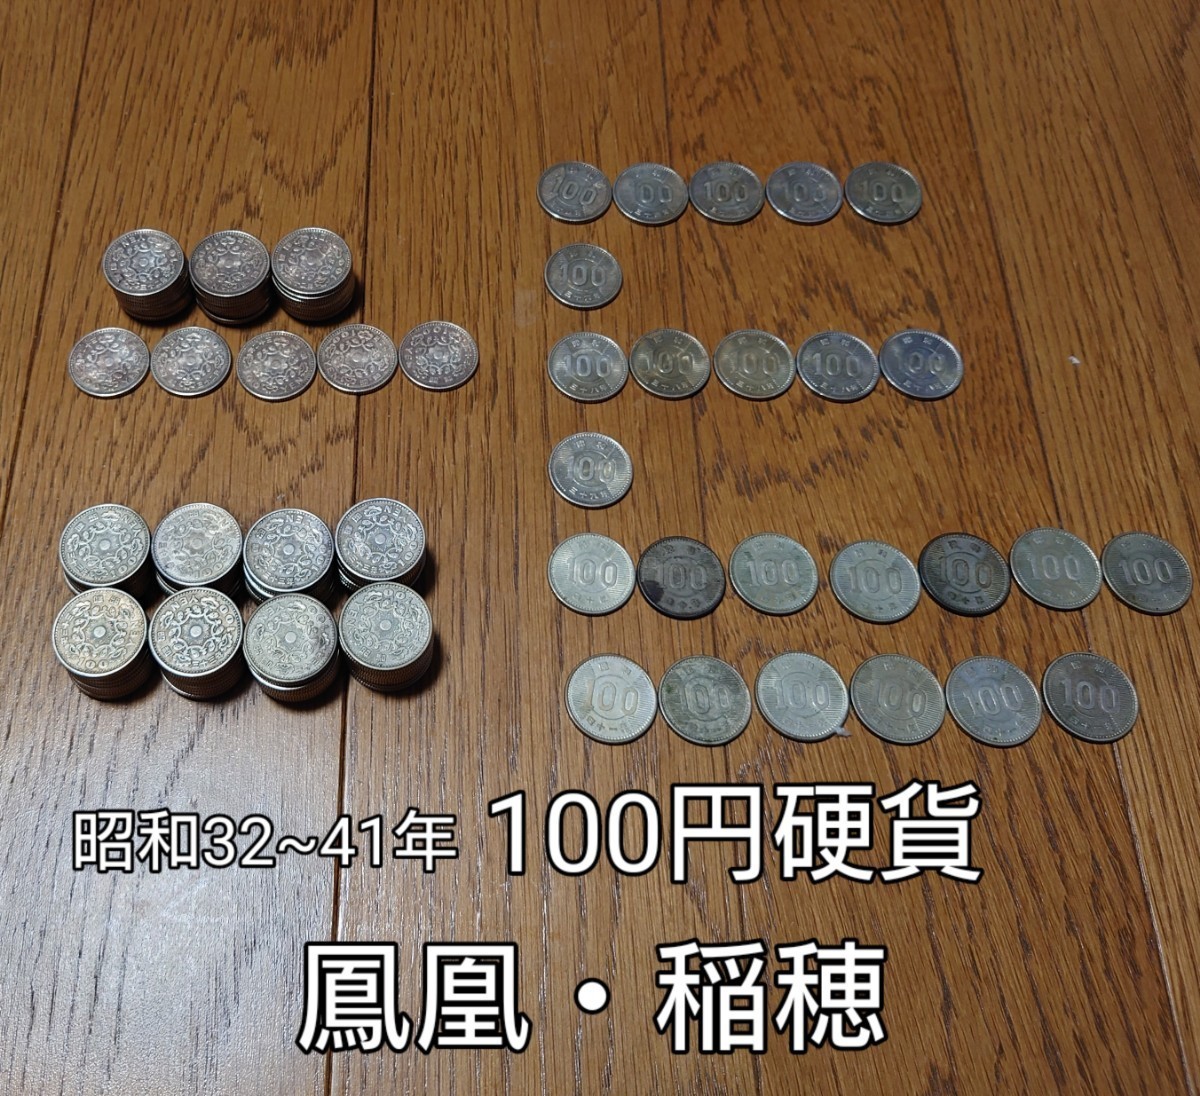 昭和32~41年 古銭 100円硬貨 鳳凰115枚 稲穂25枚 合計140枚 昭和39年製